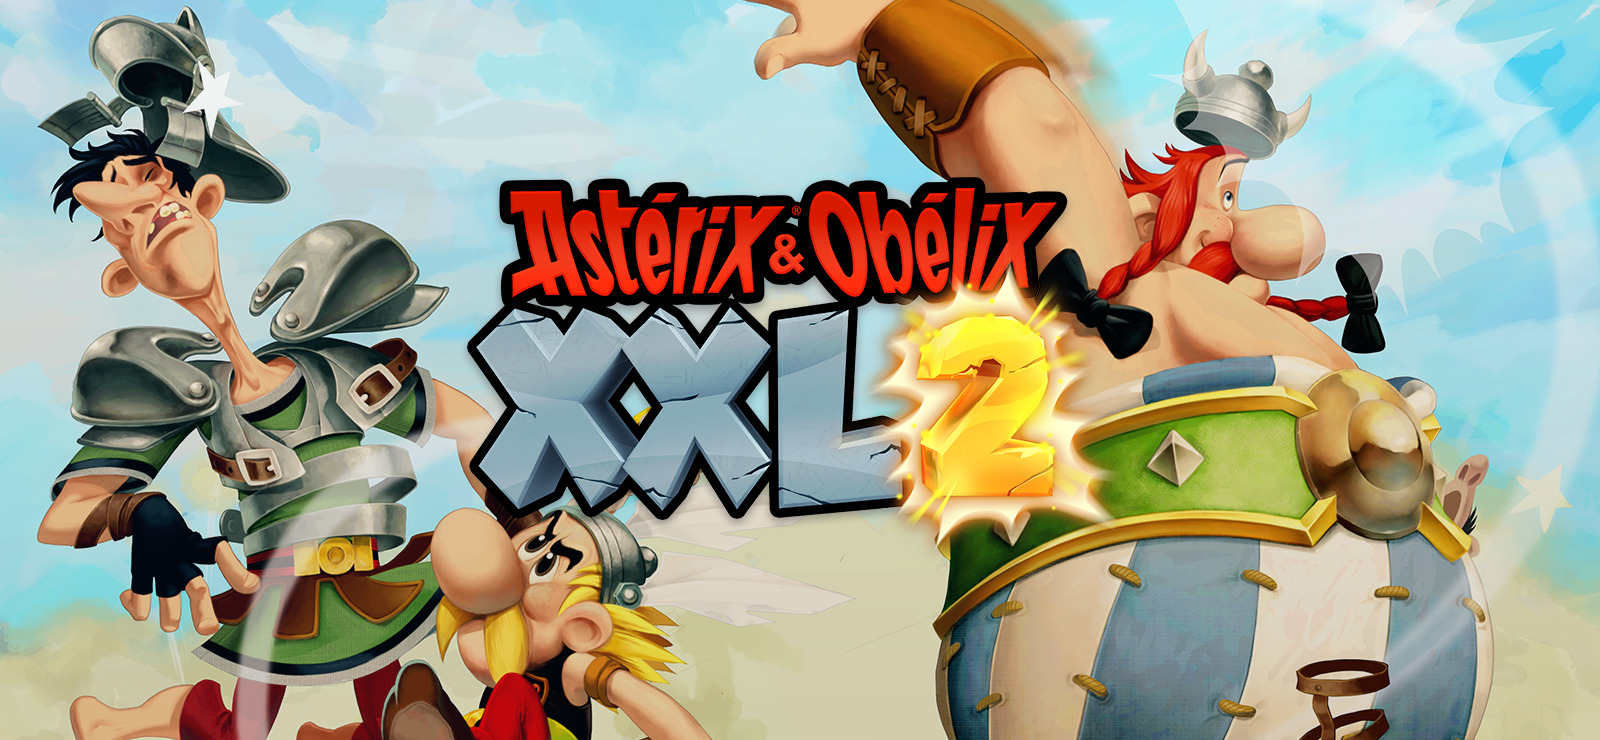 asterix and obelix xxl crack download